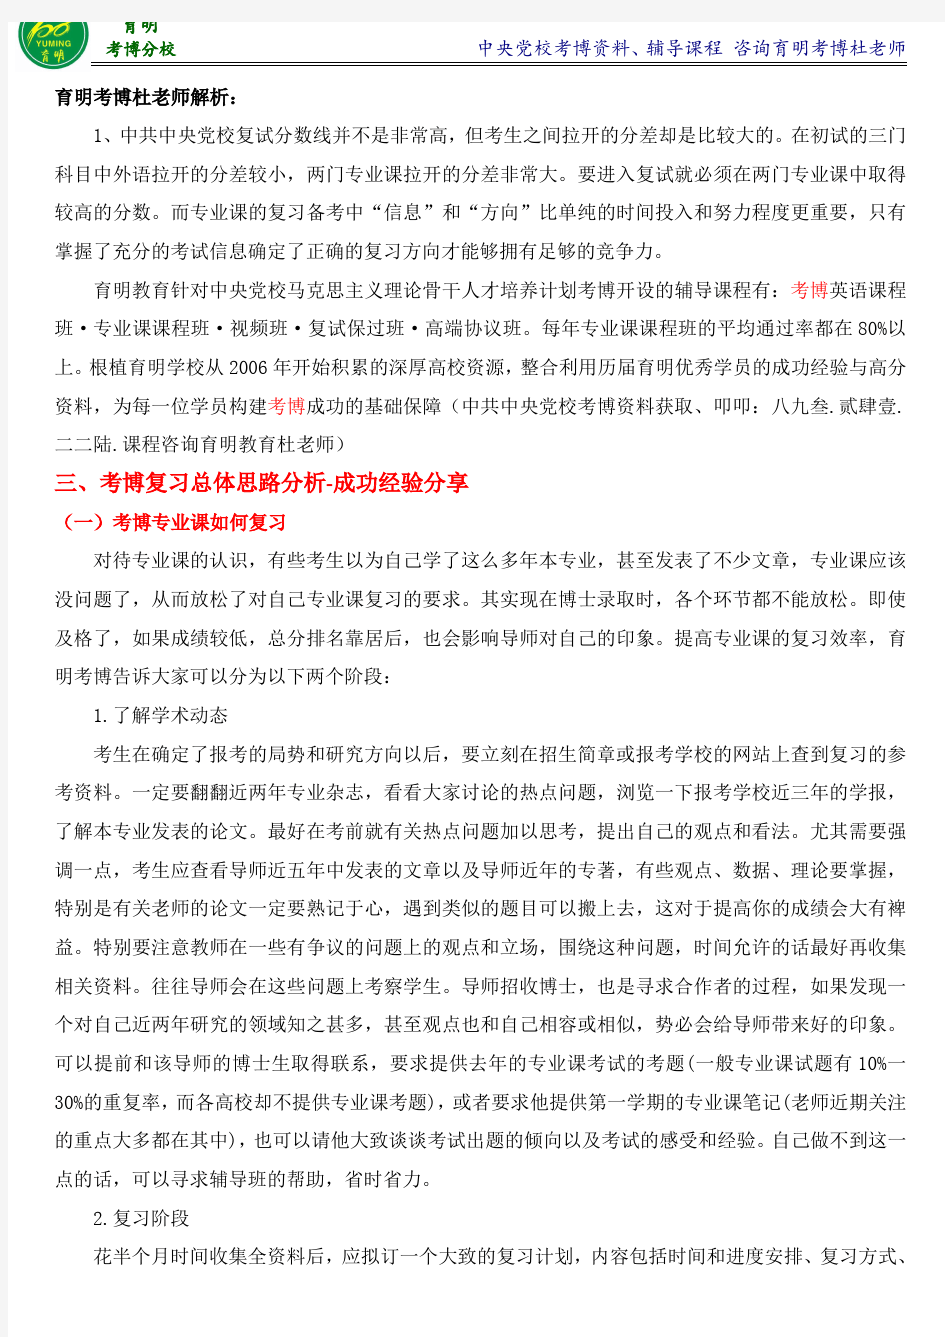 中共中央党校马克思主义基本原理考博真题解析-育明考博